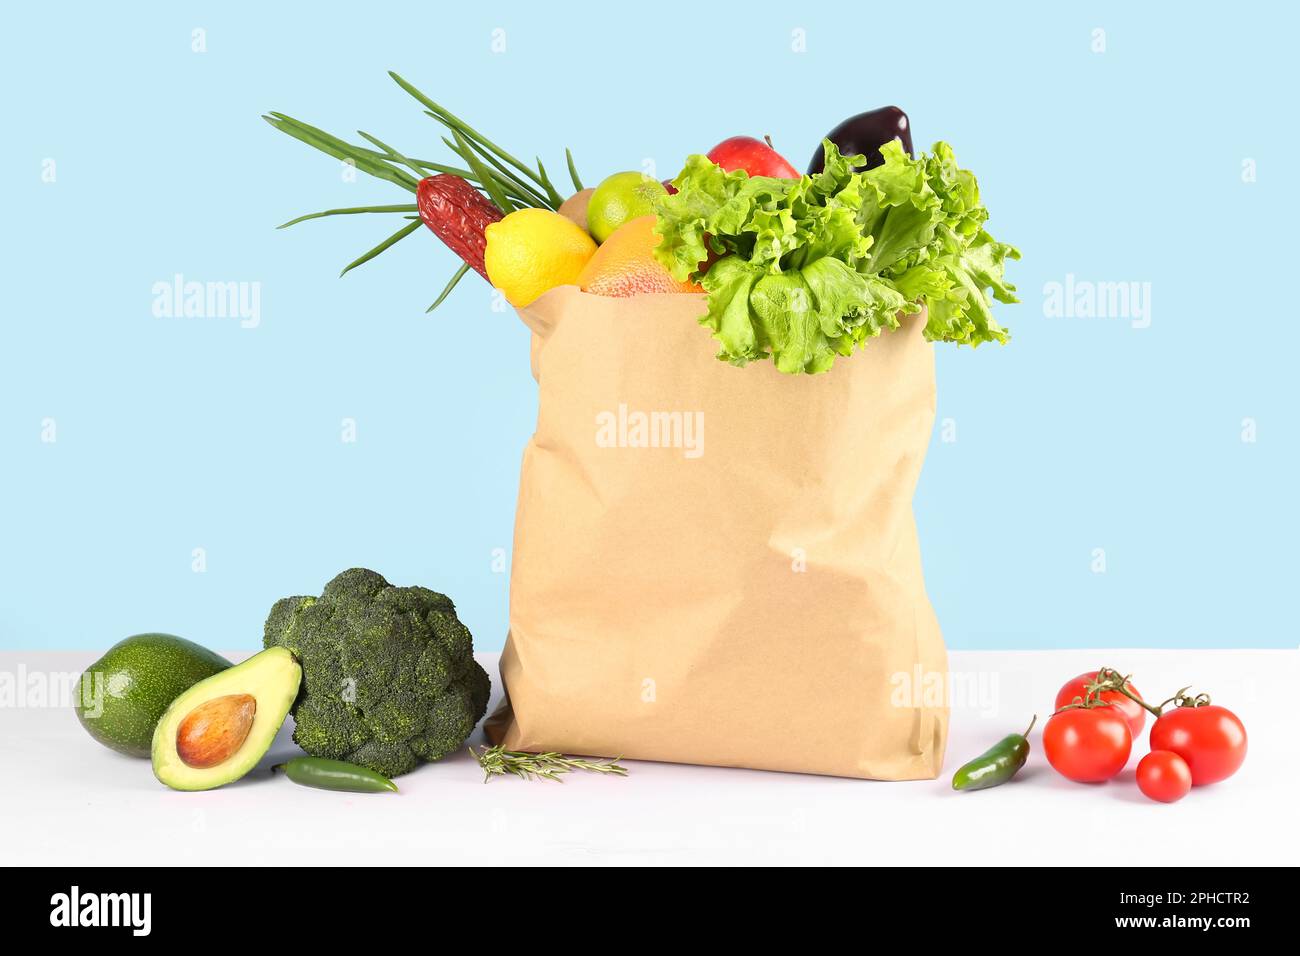 Sac en papier avec légumes, fruits et saucisses sur la table Photo Stock -  Alamy